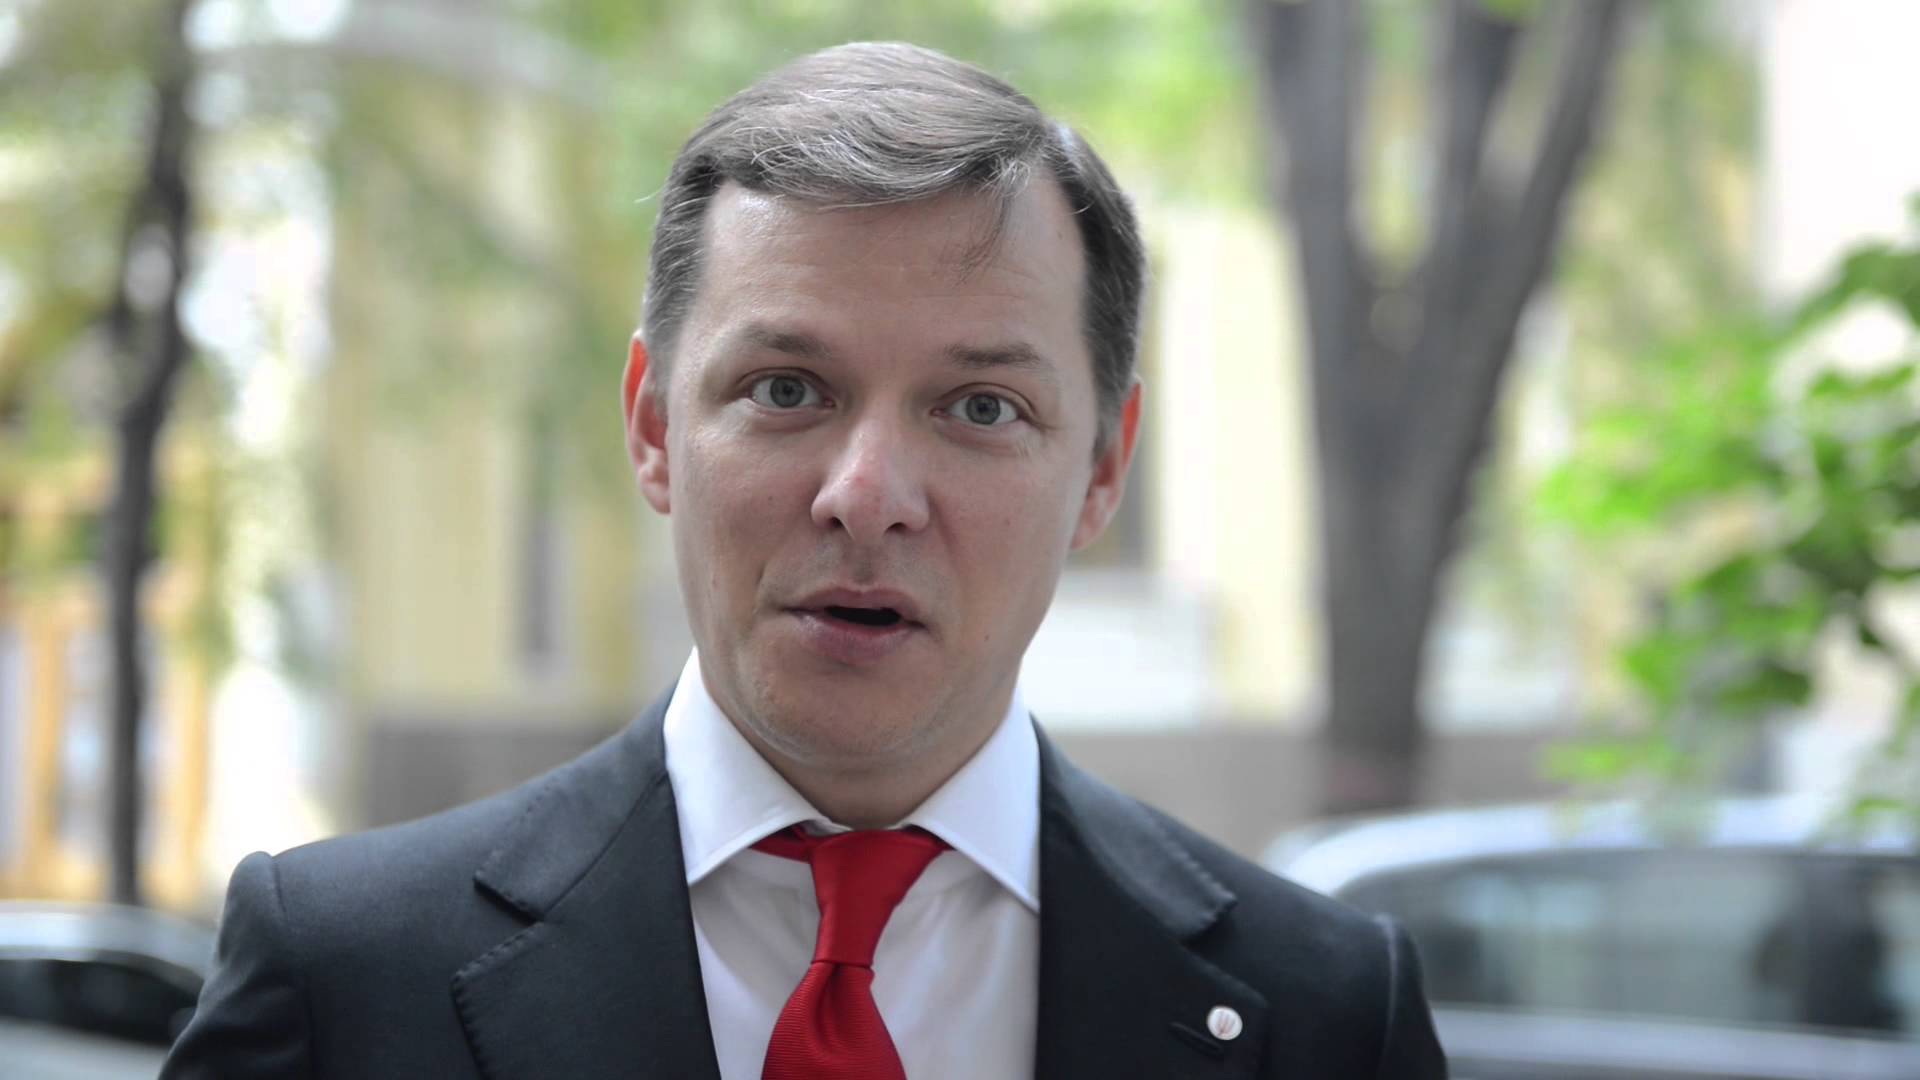  ГПУ завела дело против Олега Ляшко за угрозы в адрес черниговского прокурора  